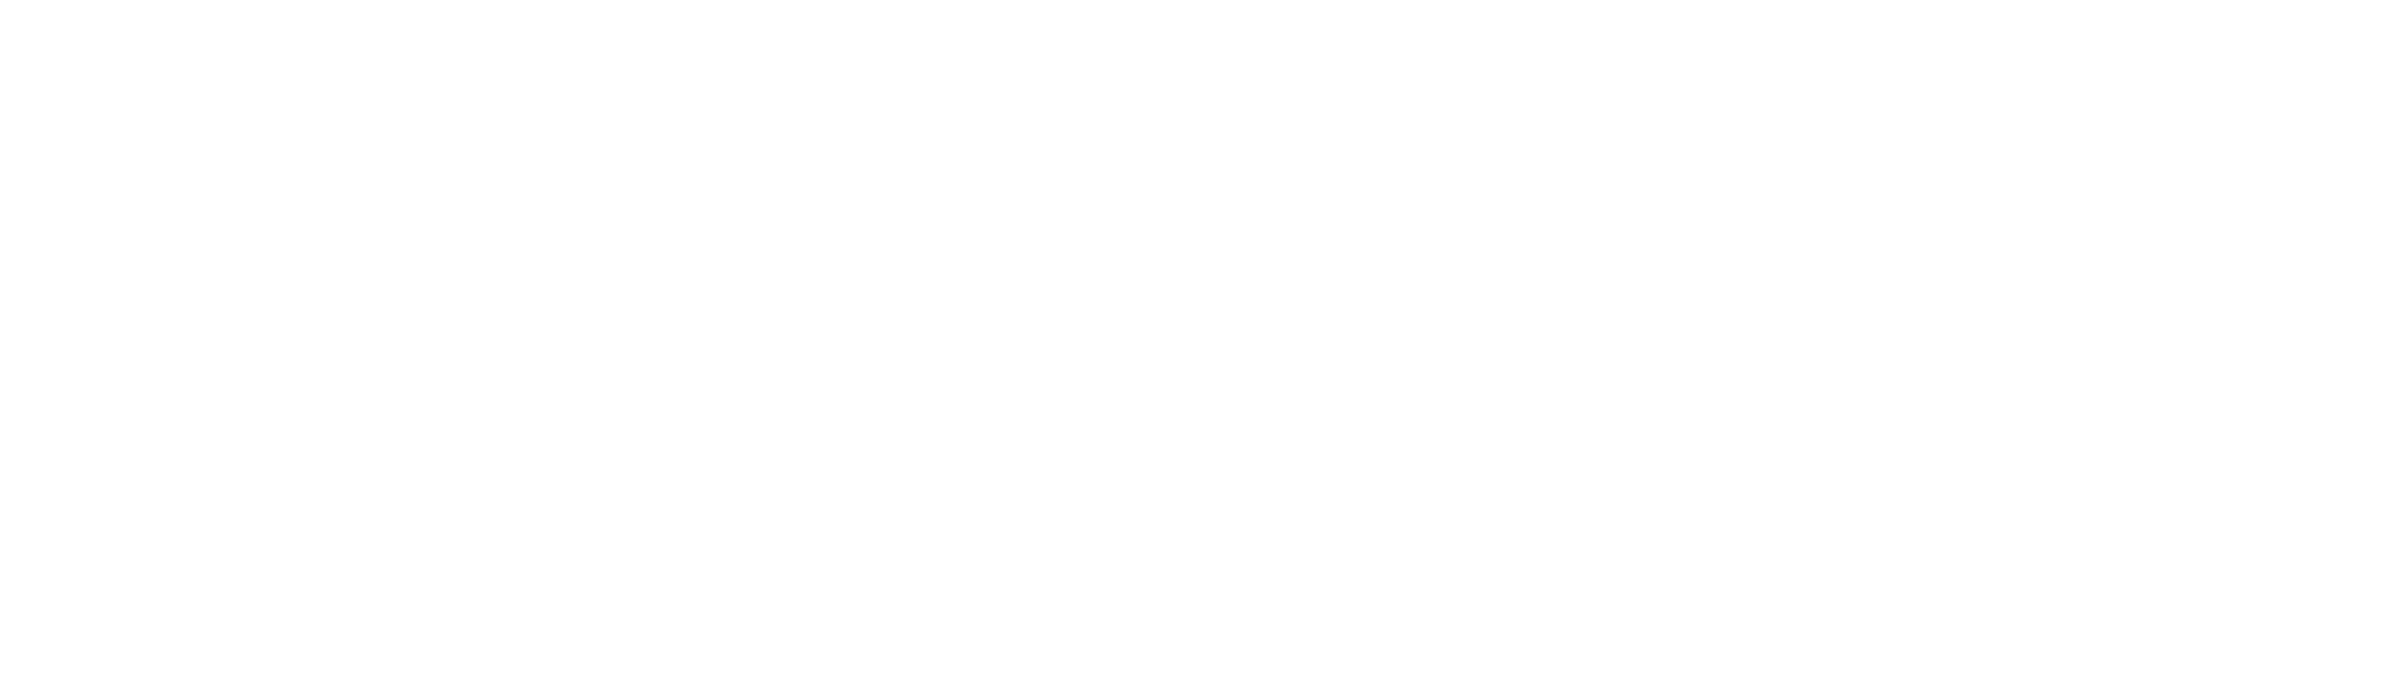 komatsu-logo-black-and-white